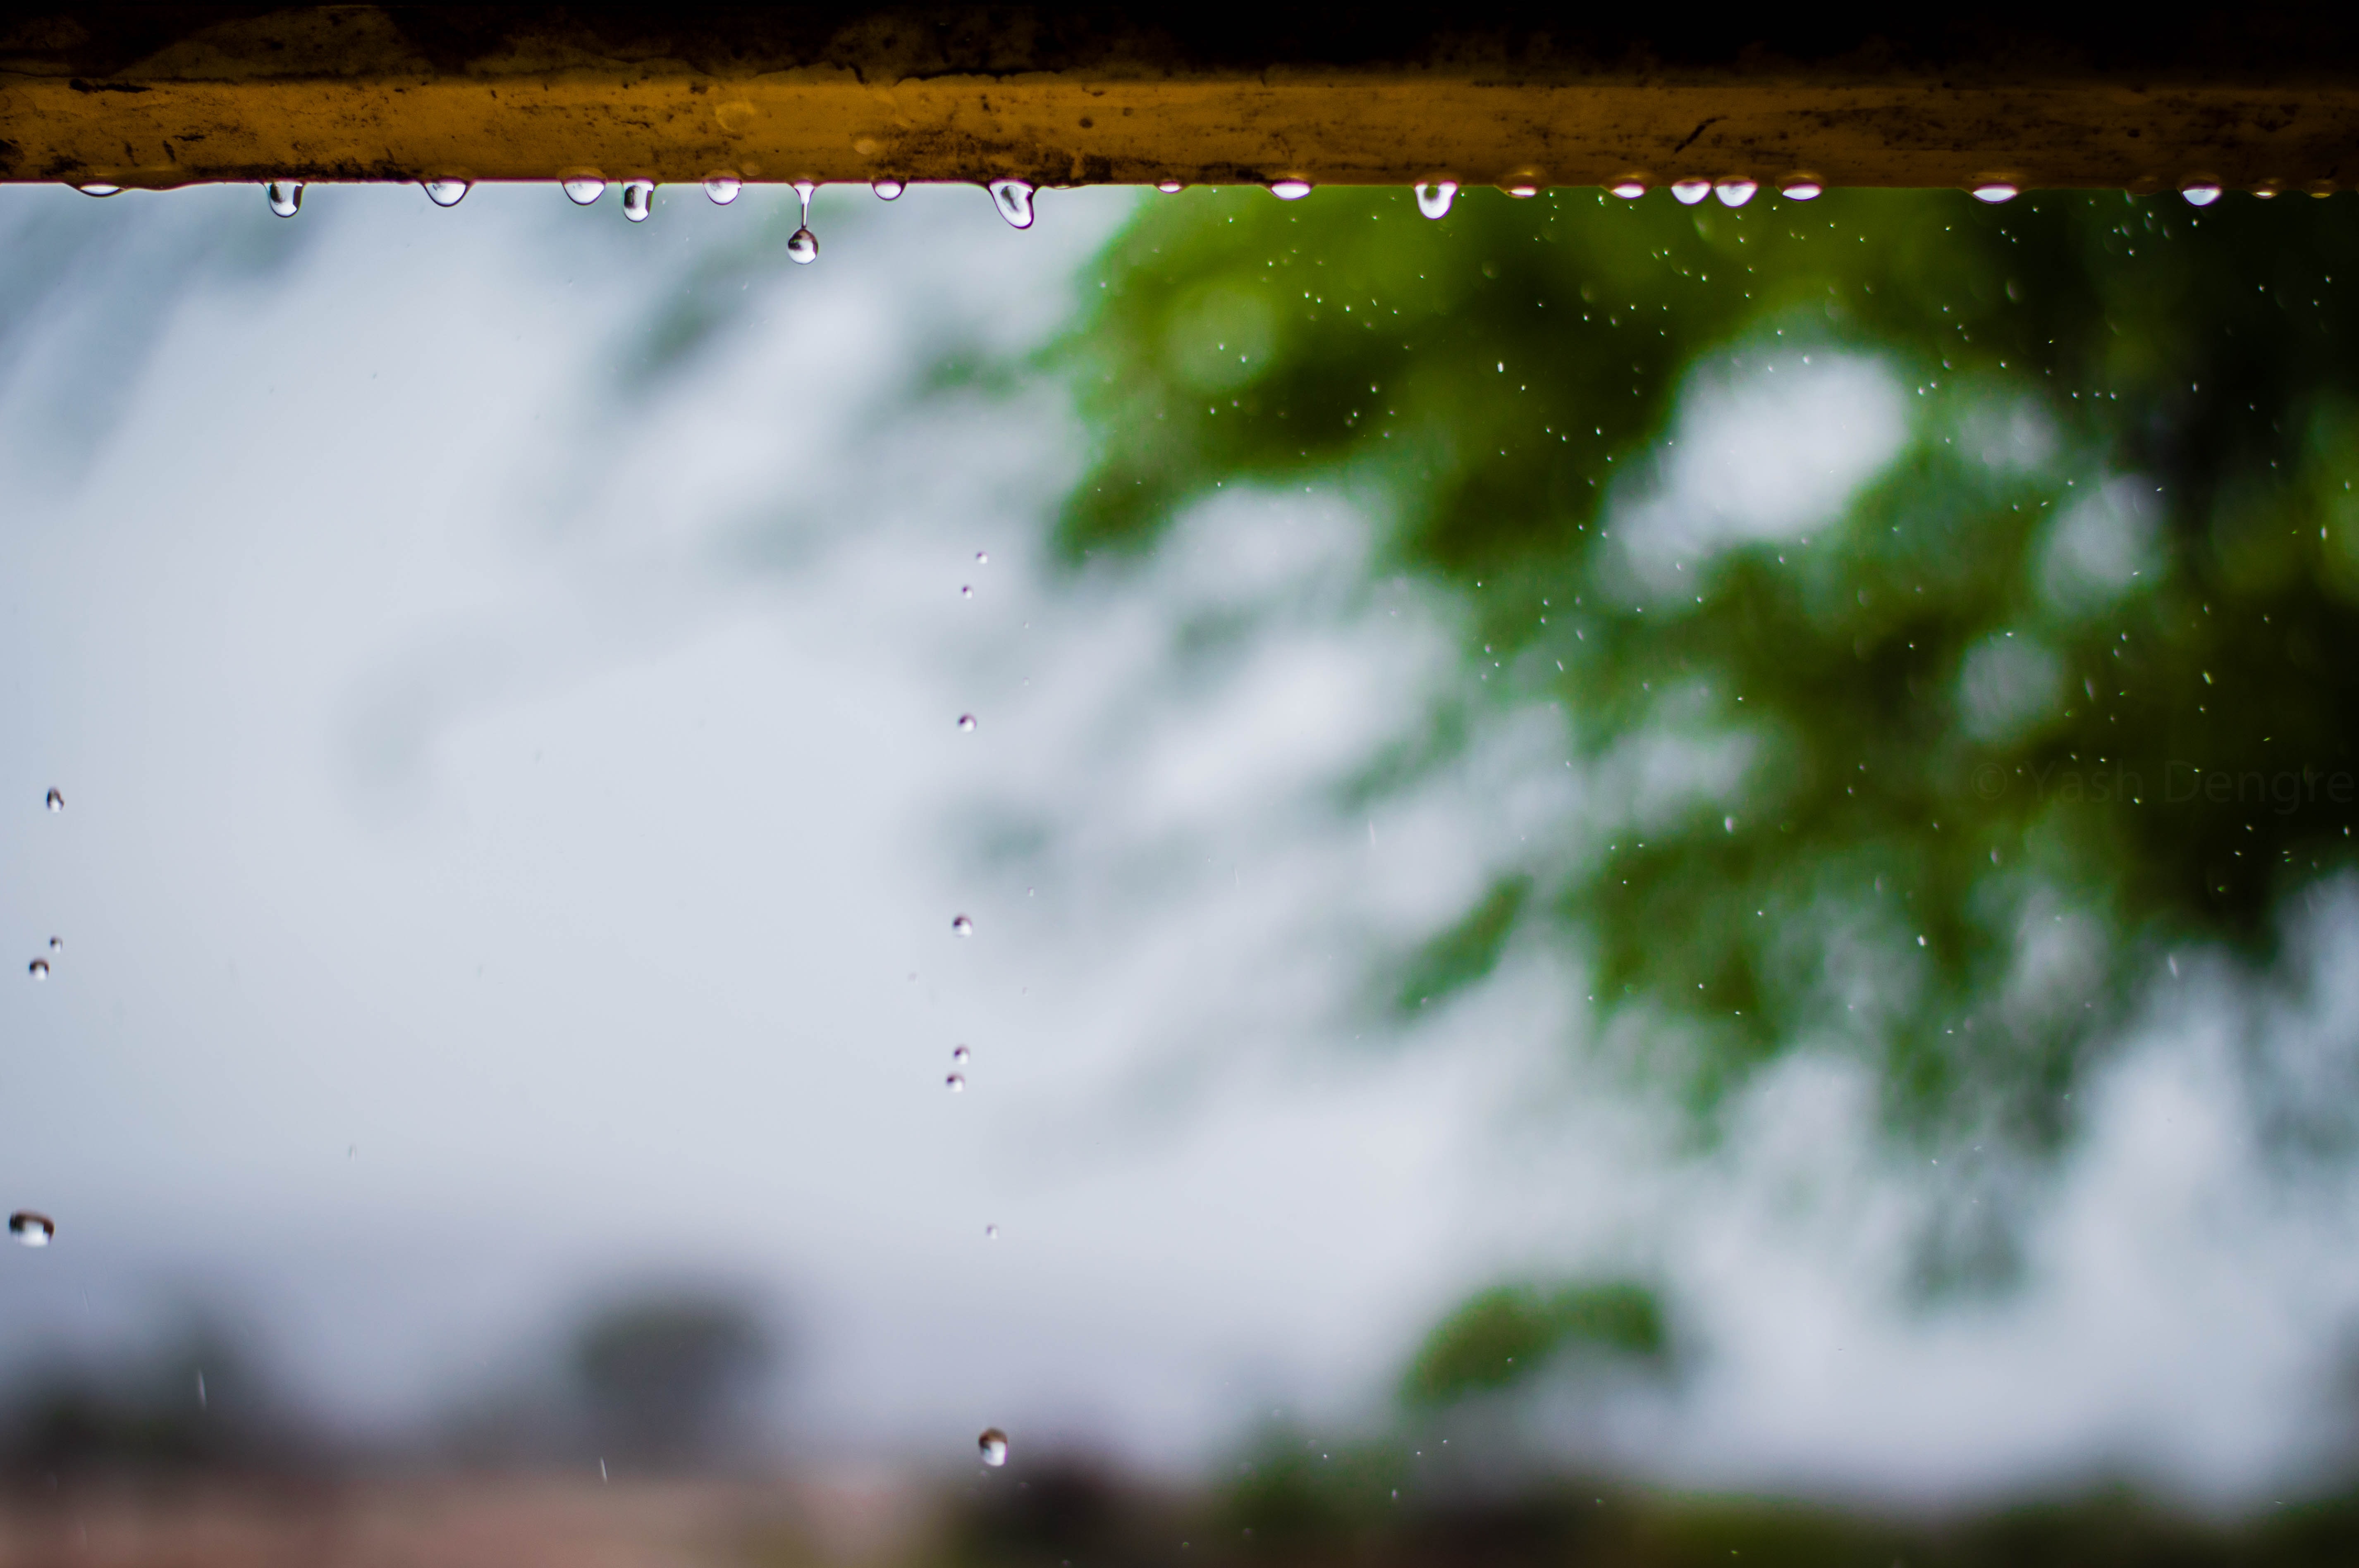 Капли дождя стучат. Стук капель дождя. Дождь по крыше. Капля дождя в воздухе. Rainy or rainny.